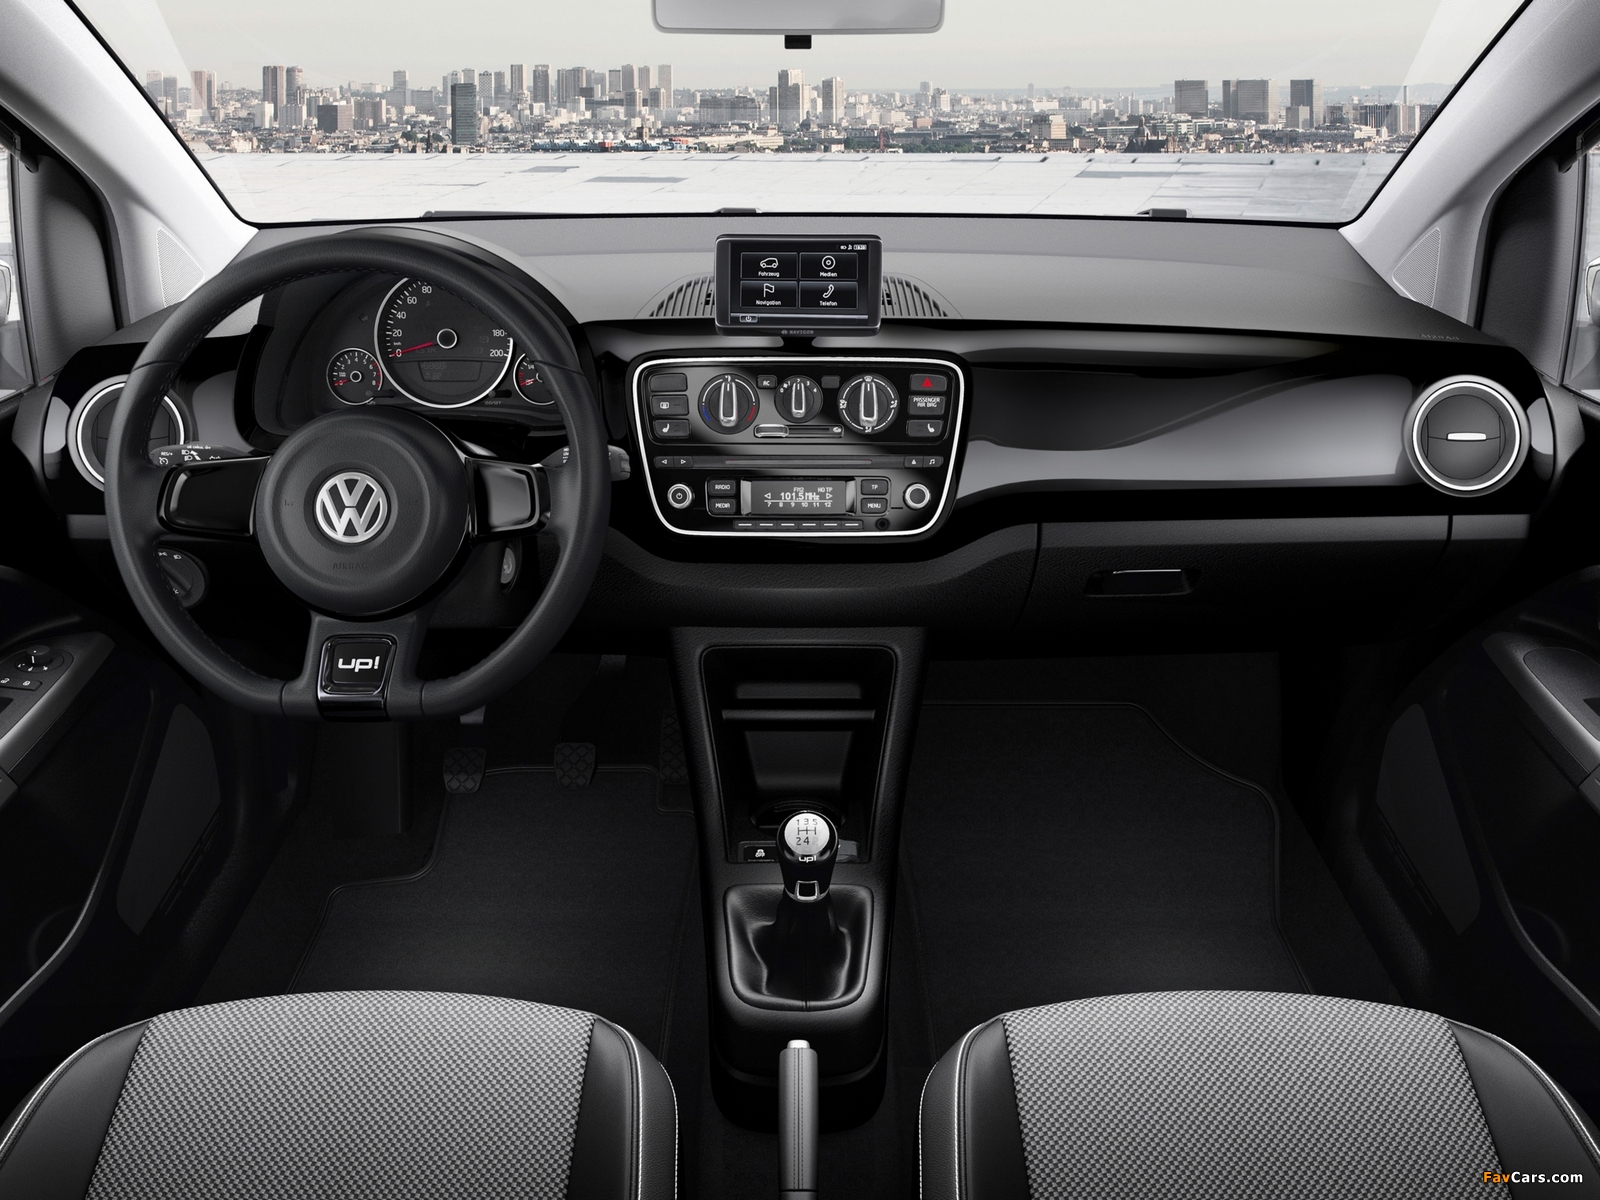 Volkswagen up! Black 3-door 2011 photos (1600 x 1200)